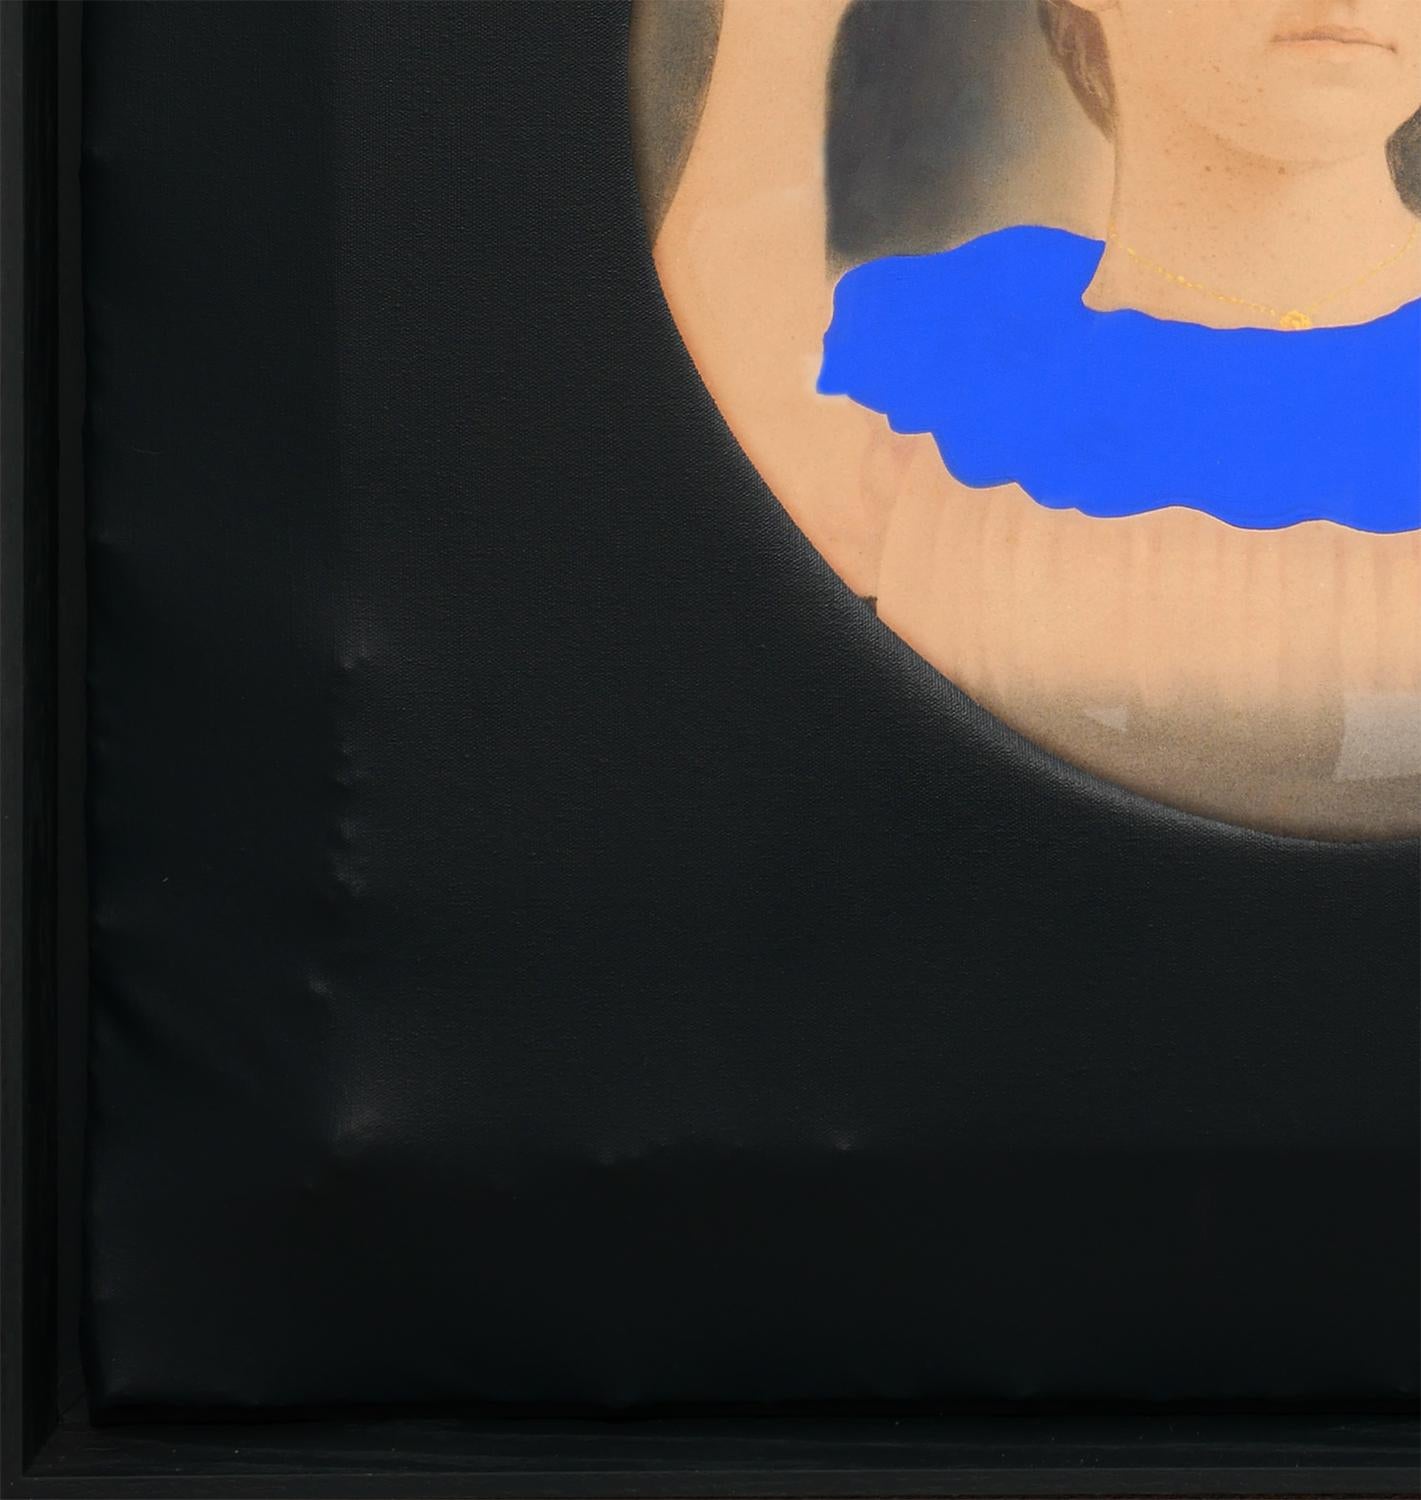 Peinture conceptuelle en trois dimensions de l'artiste contemporain Matthew Reeves, de Houston (Texas). L'œuvre présente un portrait vintage avec un col bleu vibrant peint, sur lequel est tendue une toile noire. L'artiste a stratégiquement découpé